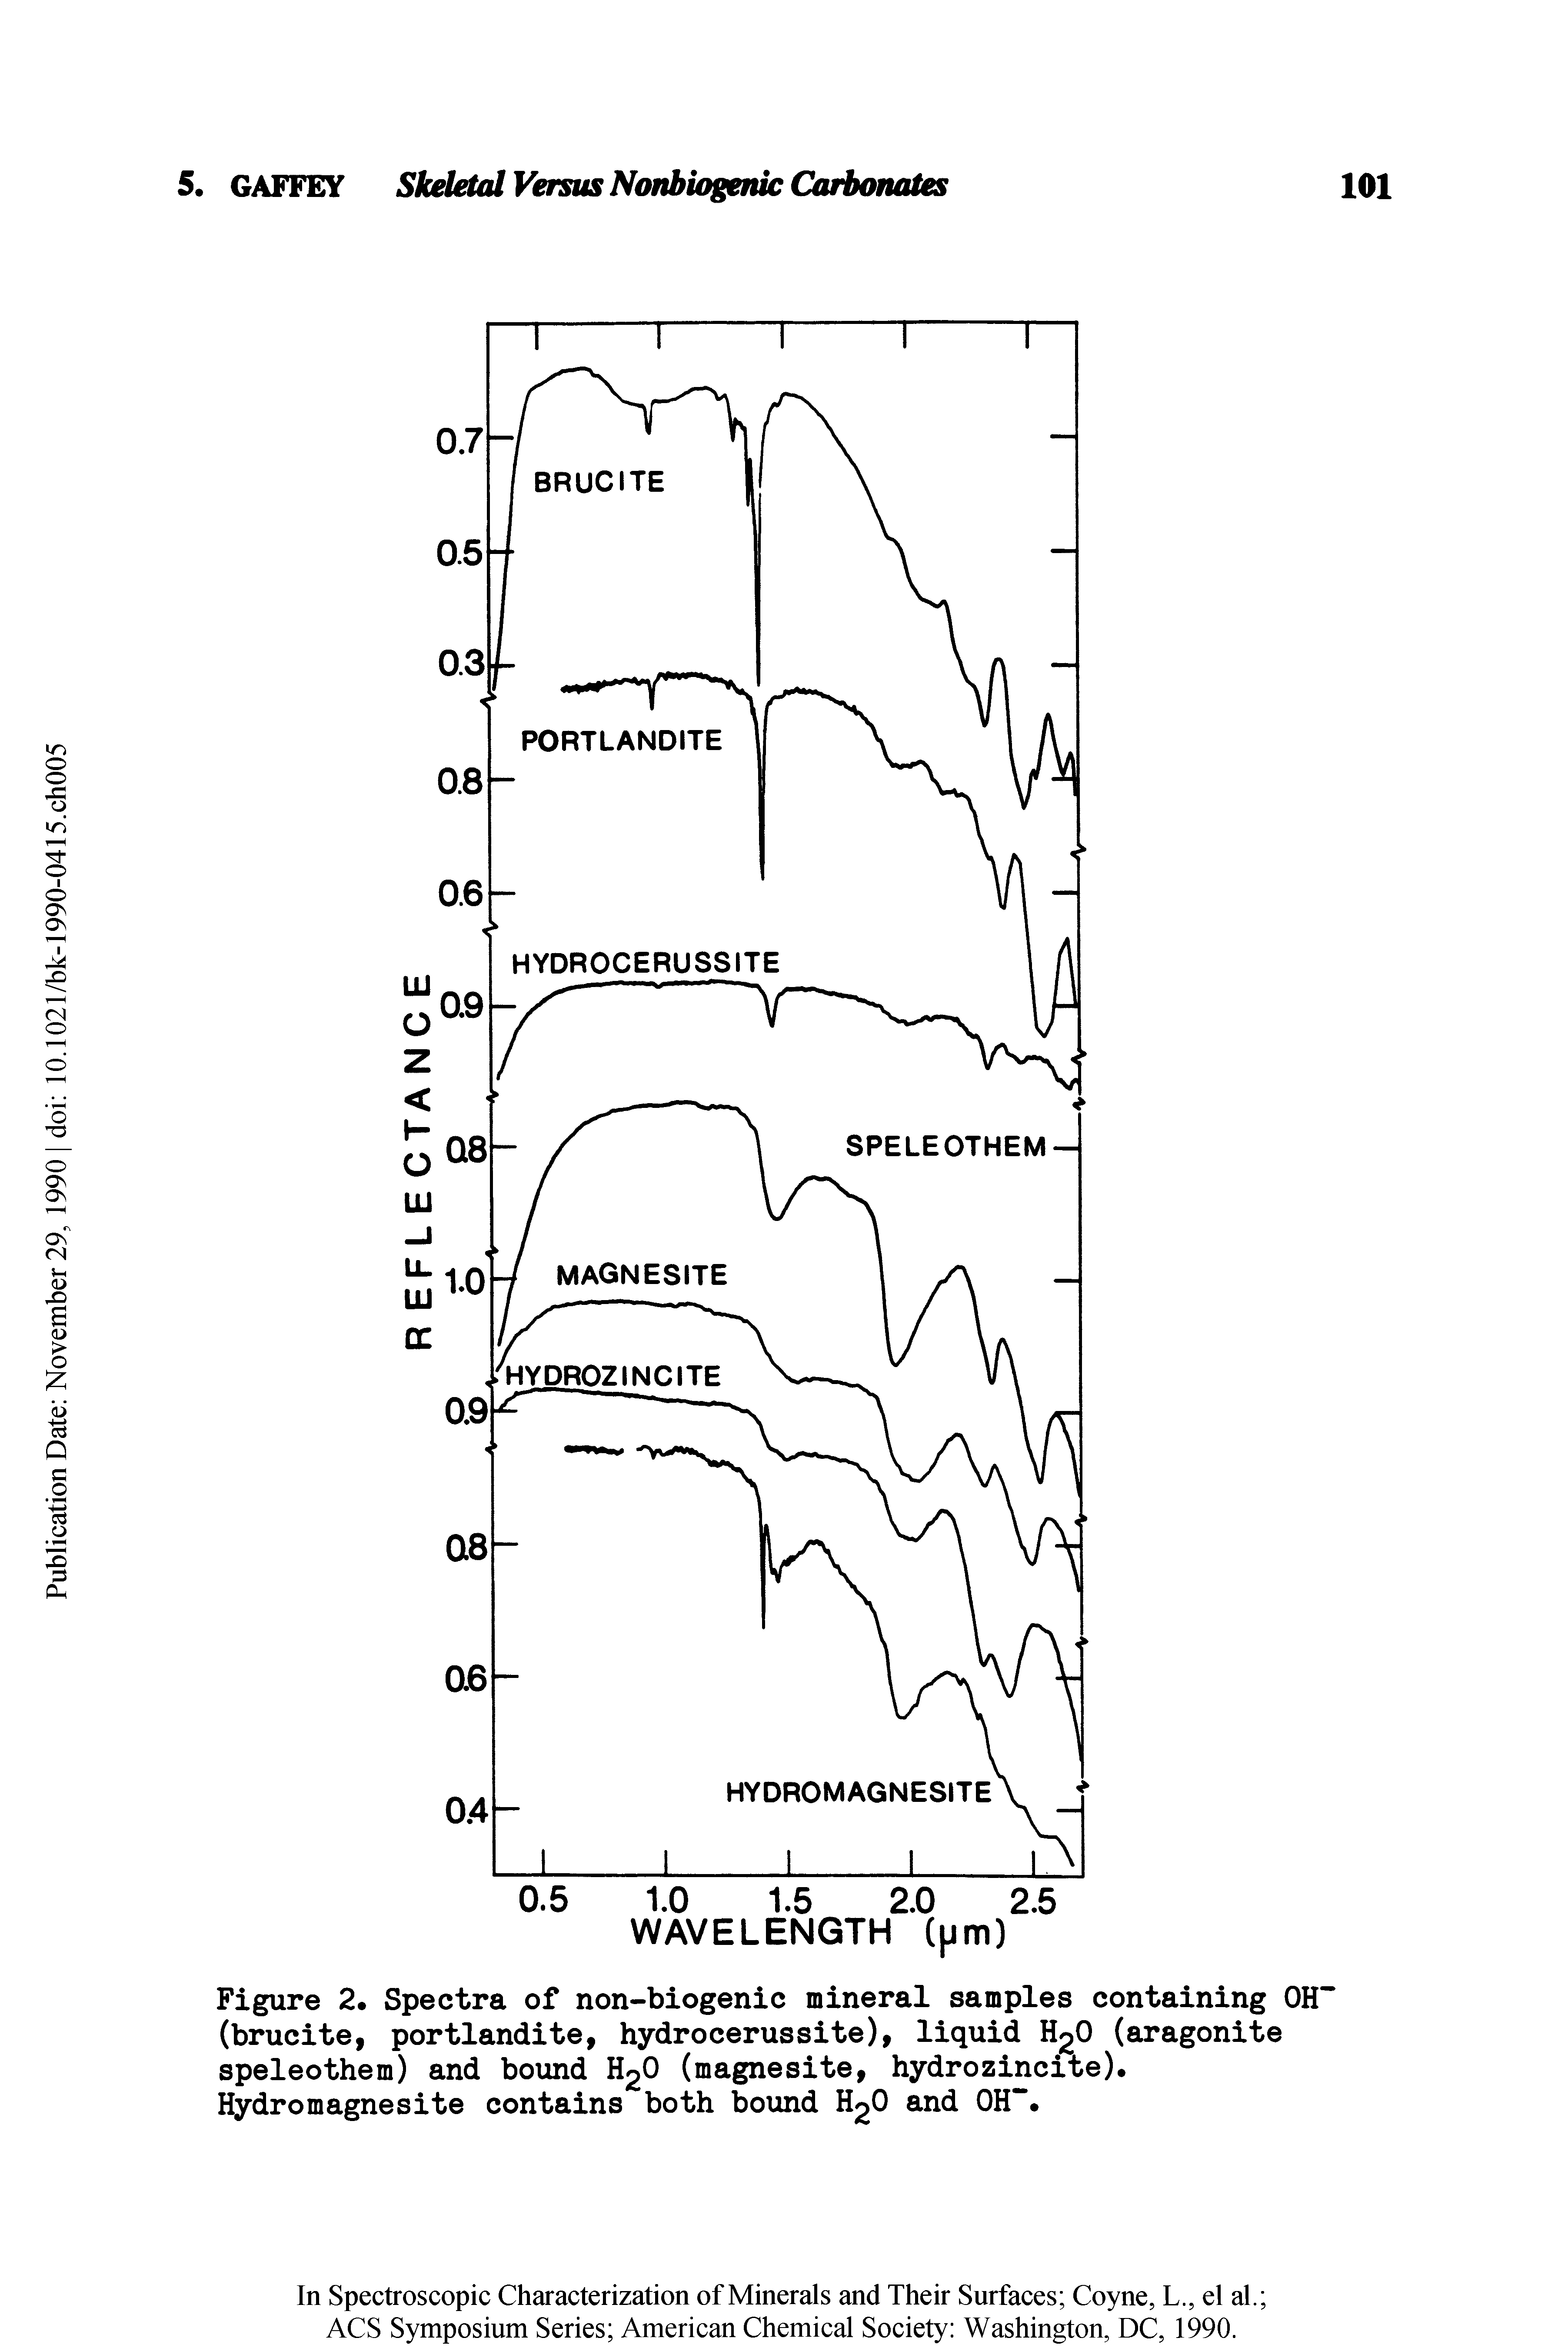 Figure 2. Spectra of non-biogenic mineral samples containing OH" (brucite, portlandite, hydrocerussite), liquid 0 (aragonite speleothem) and bound H2O (magnesite, hydrozincite).